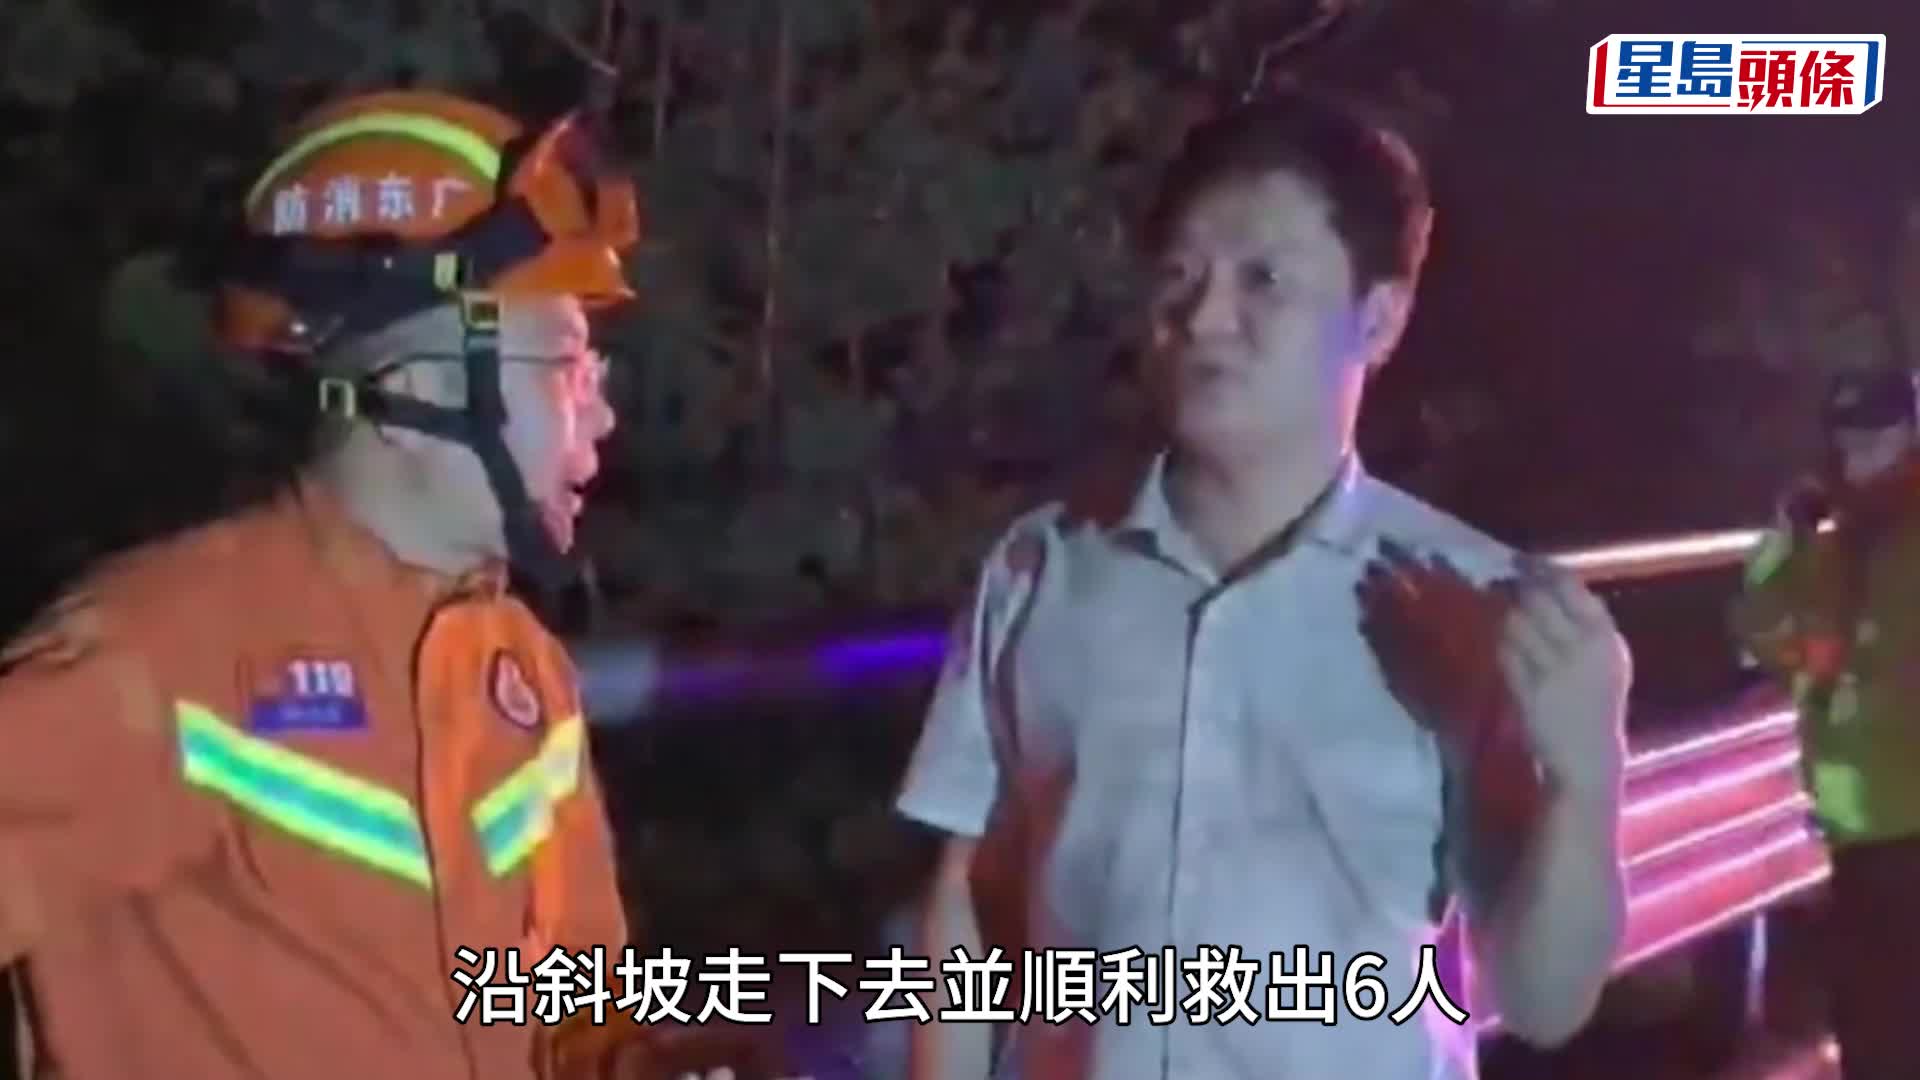 劉永縉先後在現場救出6人。